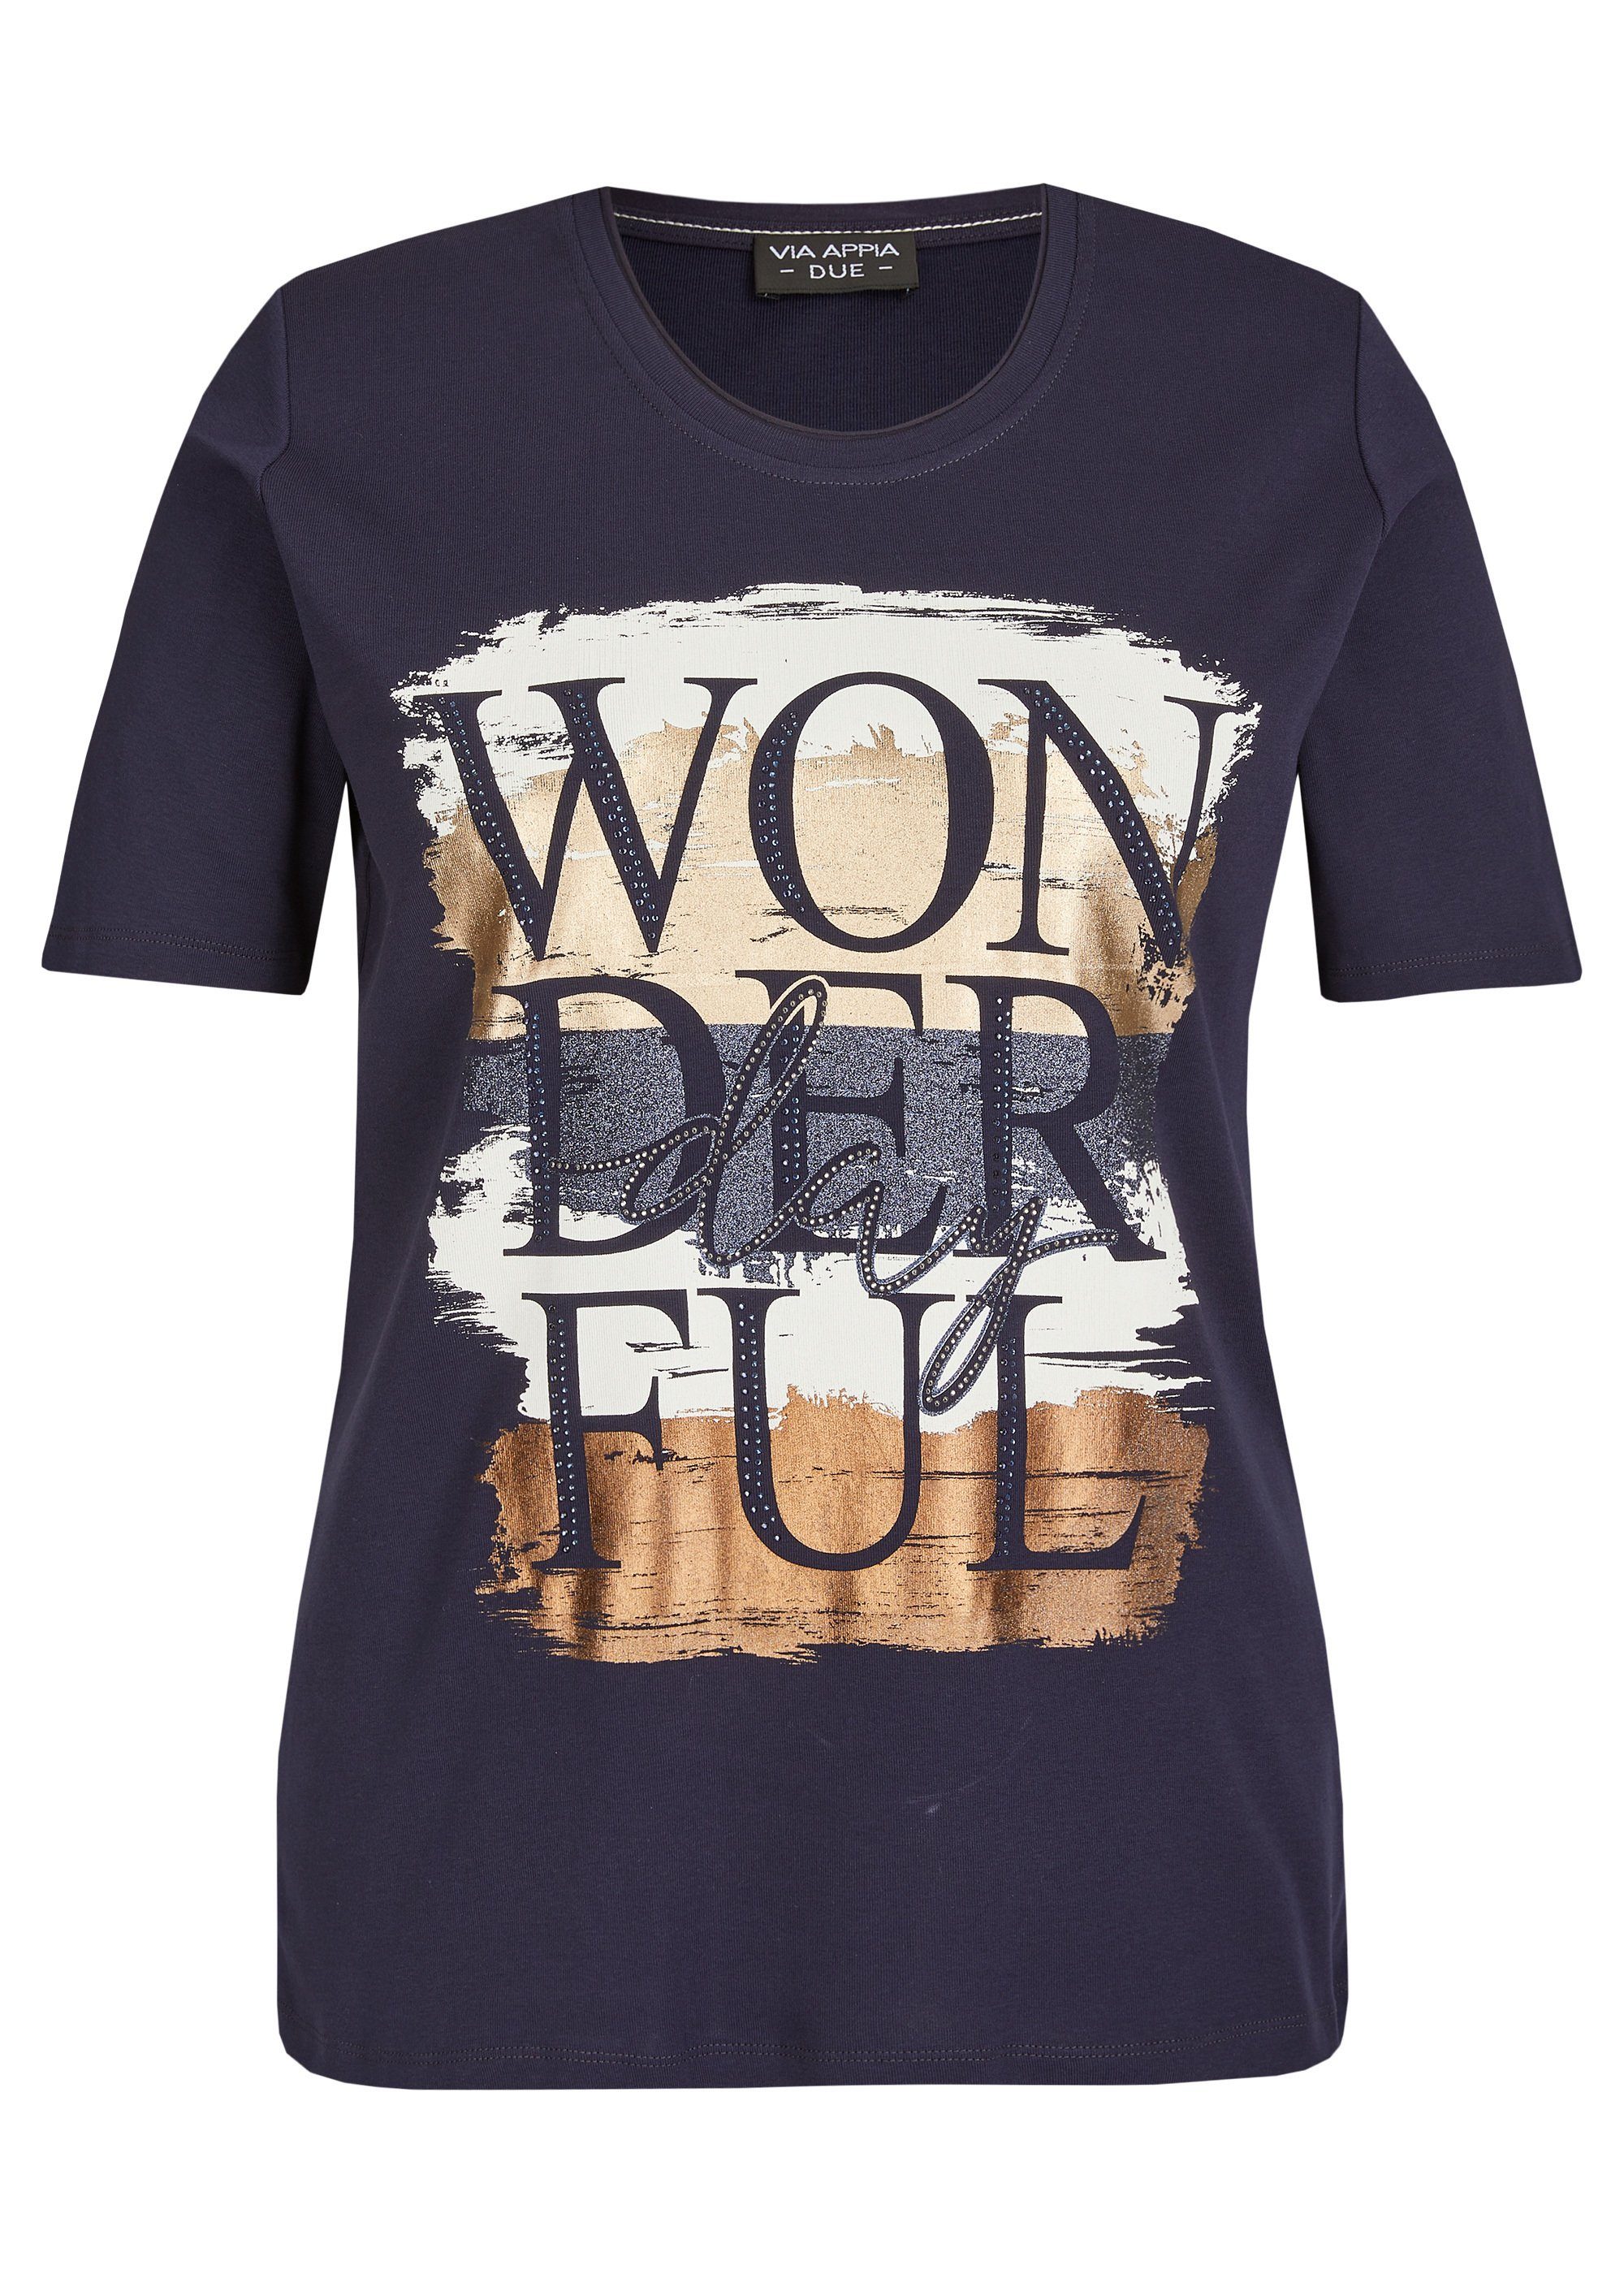 VIA APPIA DUE Print-Shirt Zeitloses T-Shirt mit Schmucksteinen dunkelblau multicol.